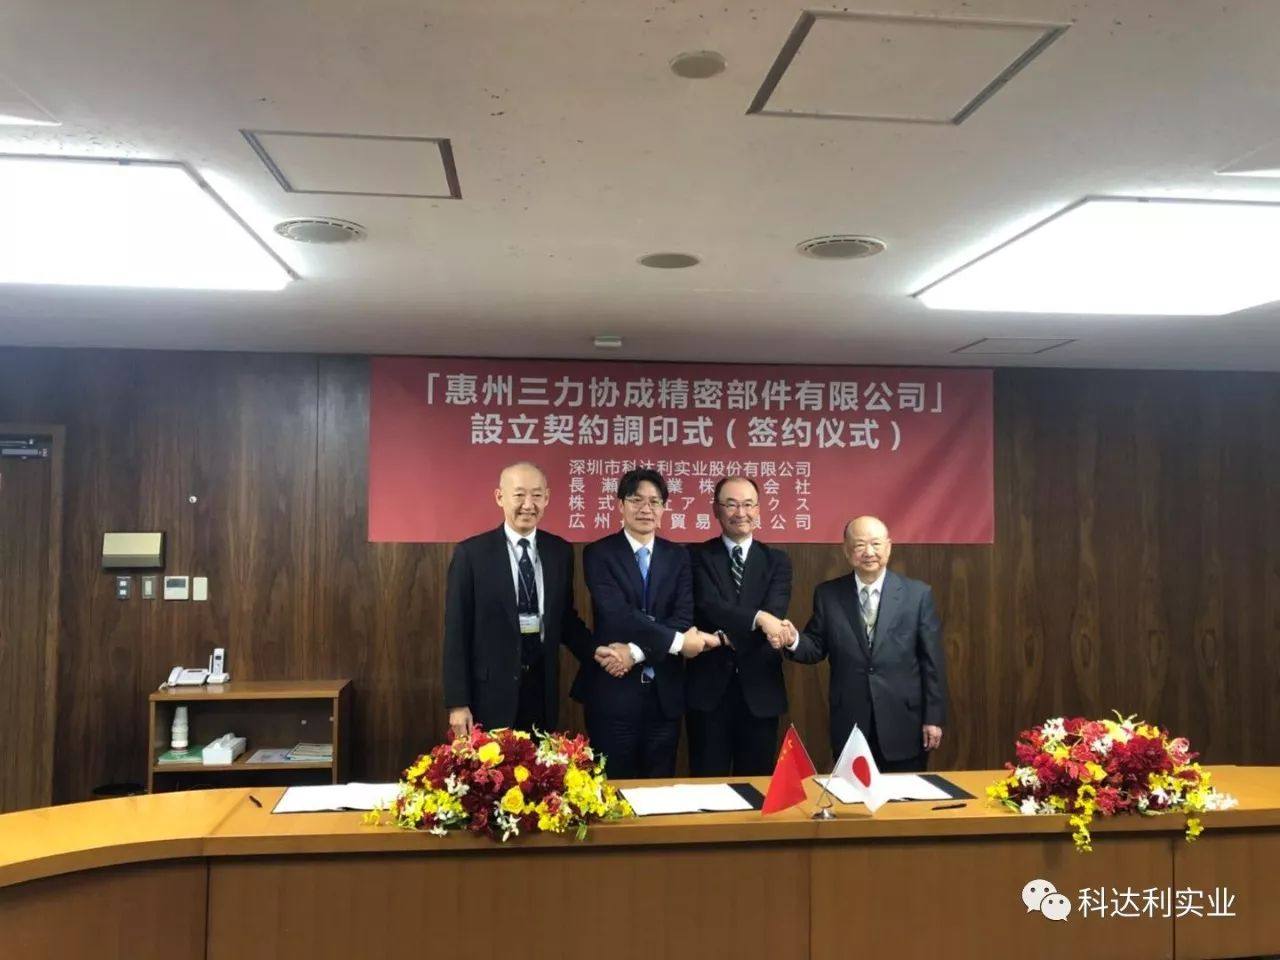 科达利与日本长濑产业、ATECS及广州长濑签署合作协议，共同设立惠州三力协成精密部件有限公司